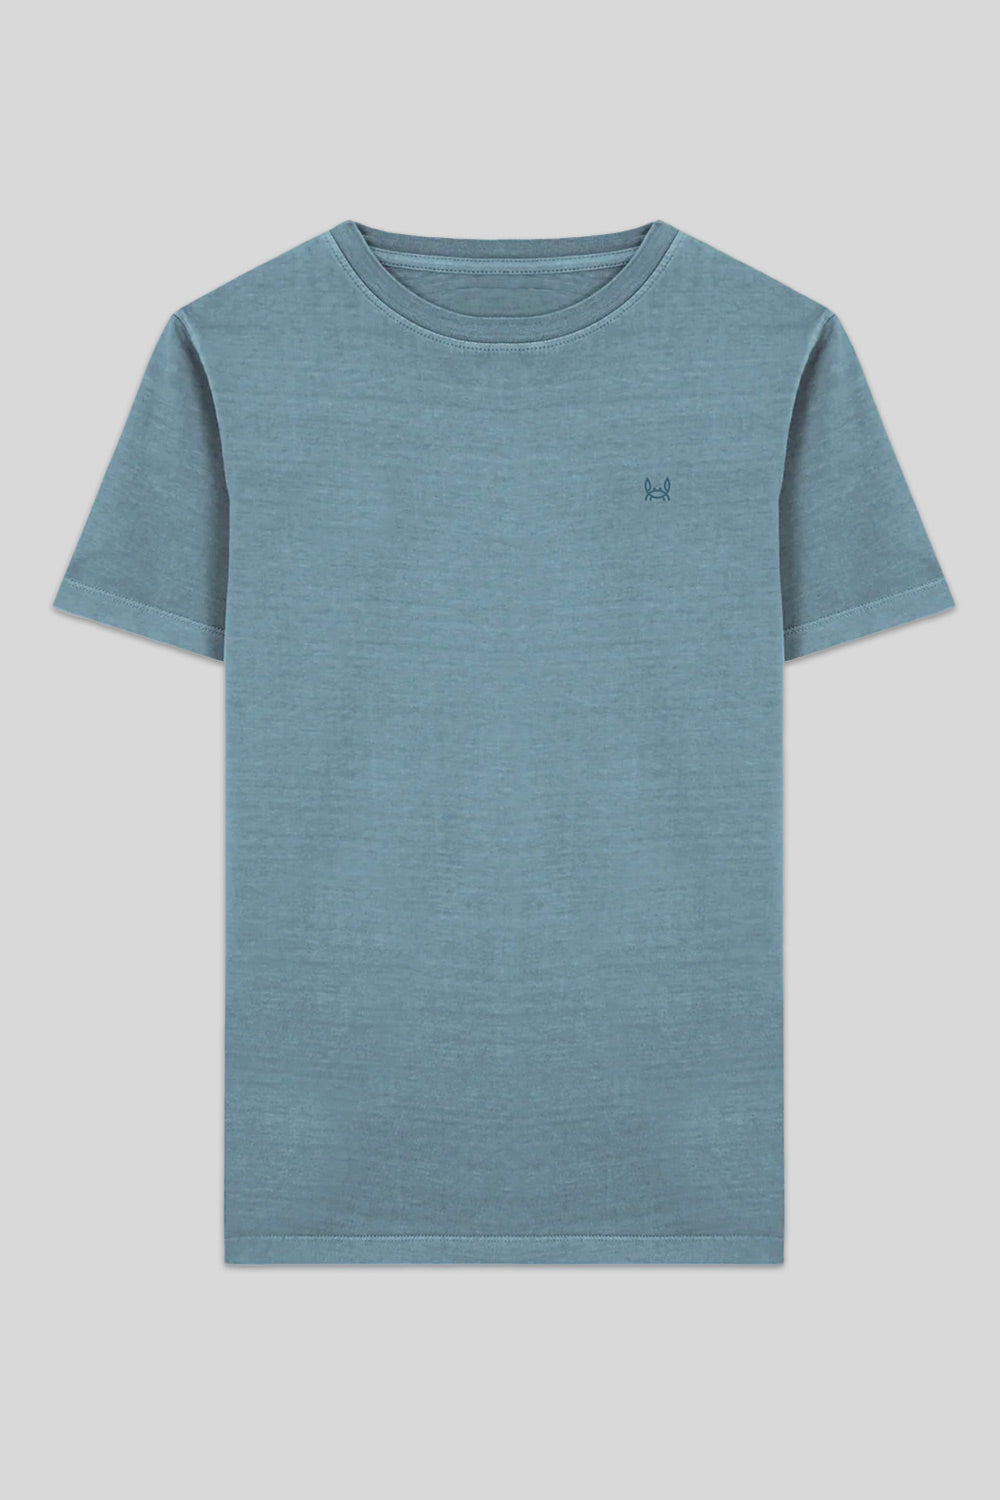 Camiseta Lavada Azul